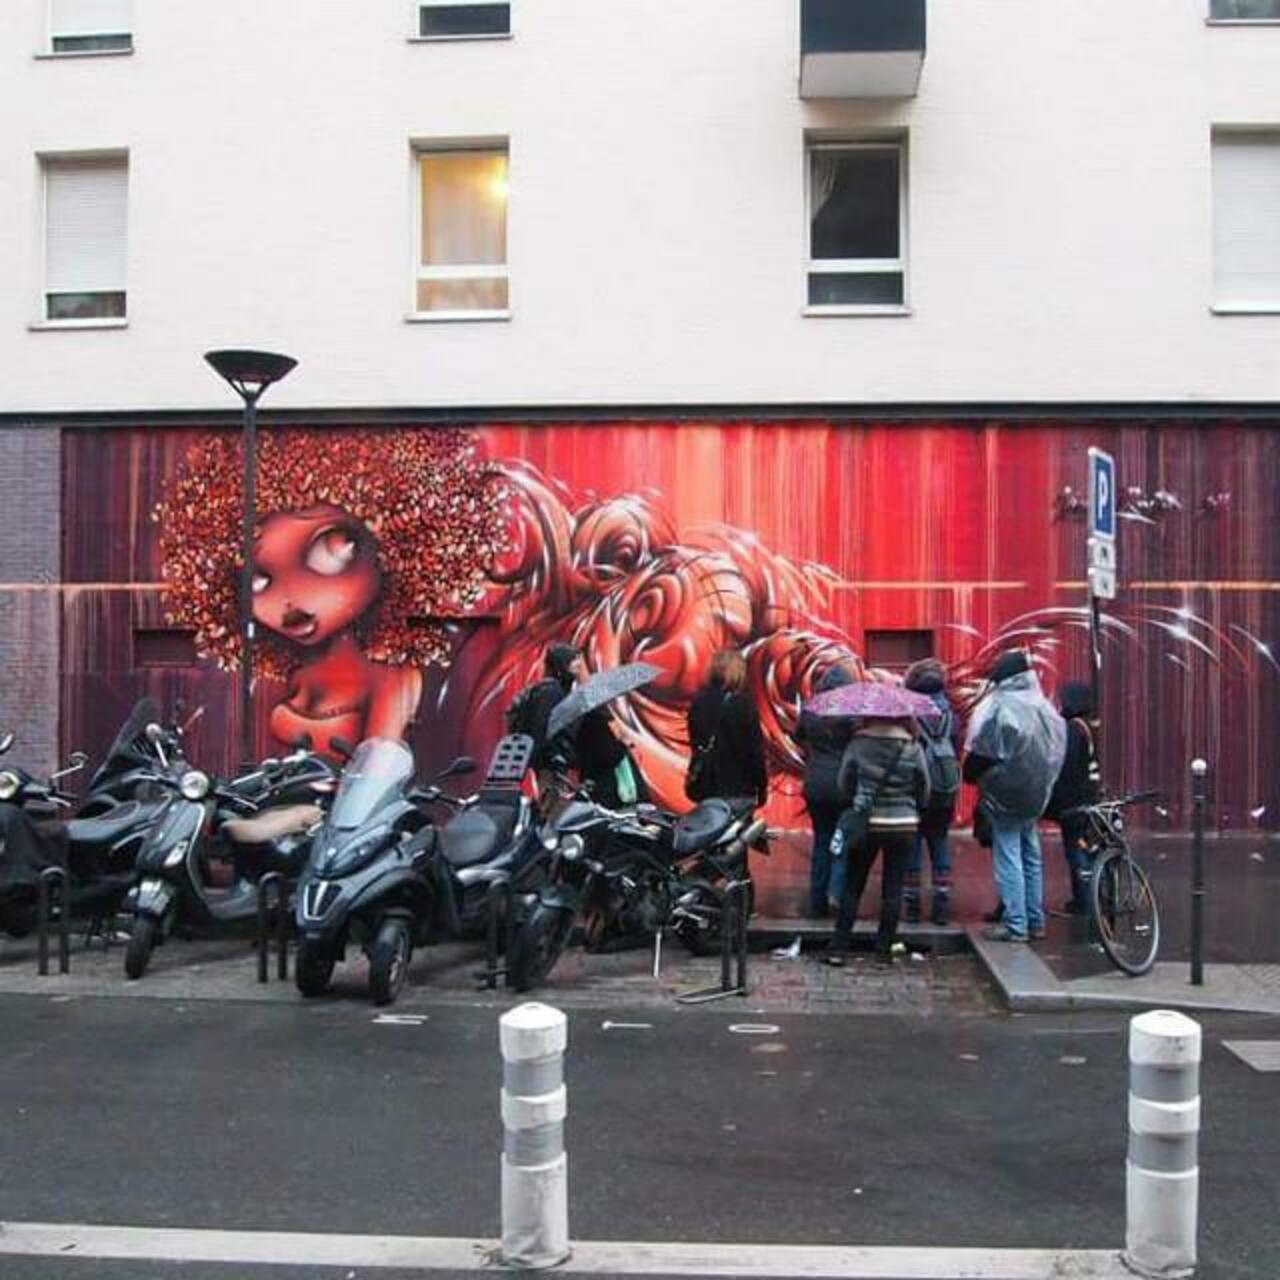 #Paris #graffiti photo by @streetarttourparis http://ift.tt/1Mfq8fm #StreetArt http://t.co/PqrweqRCWd